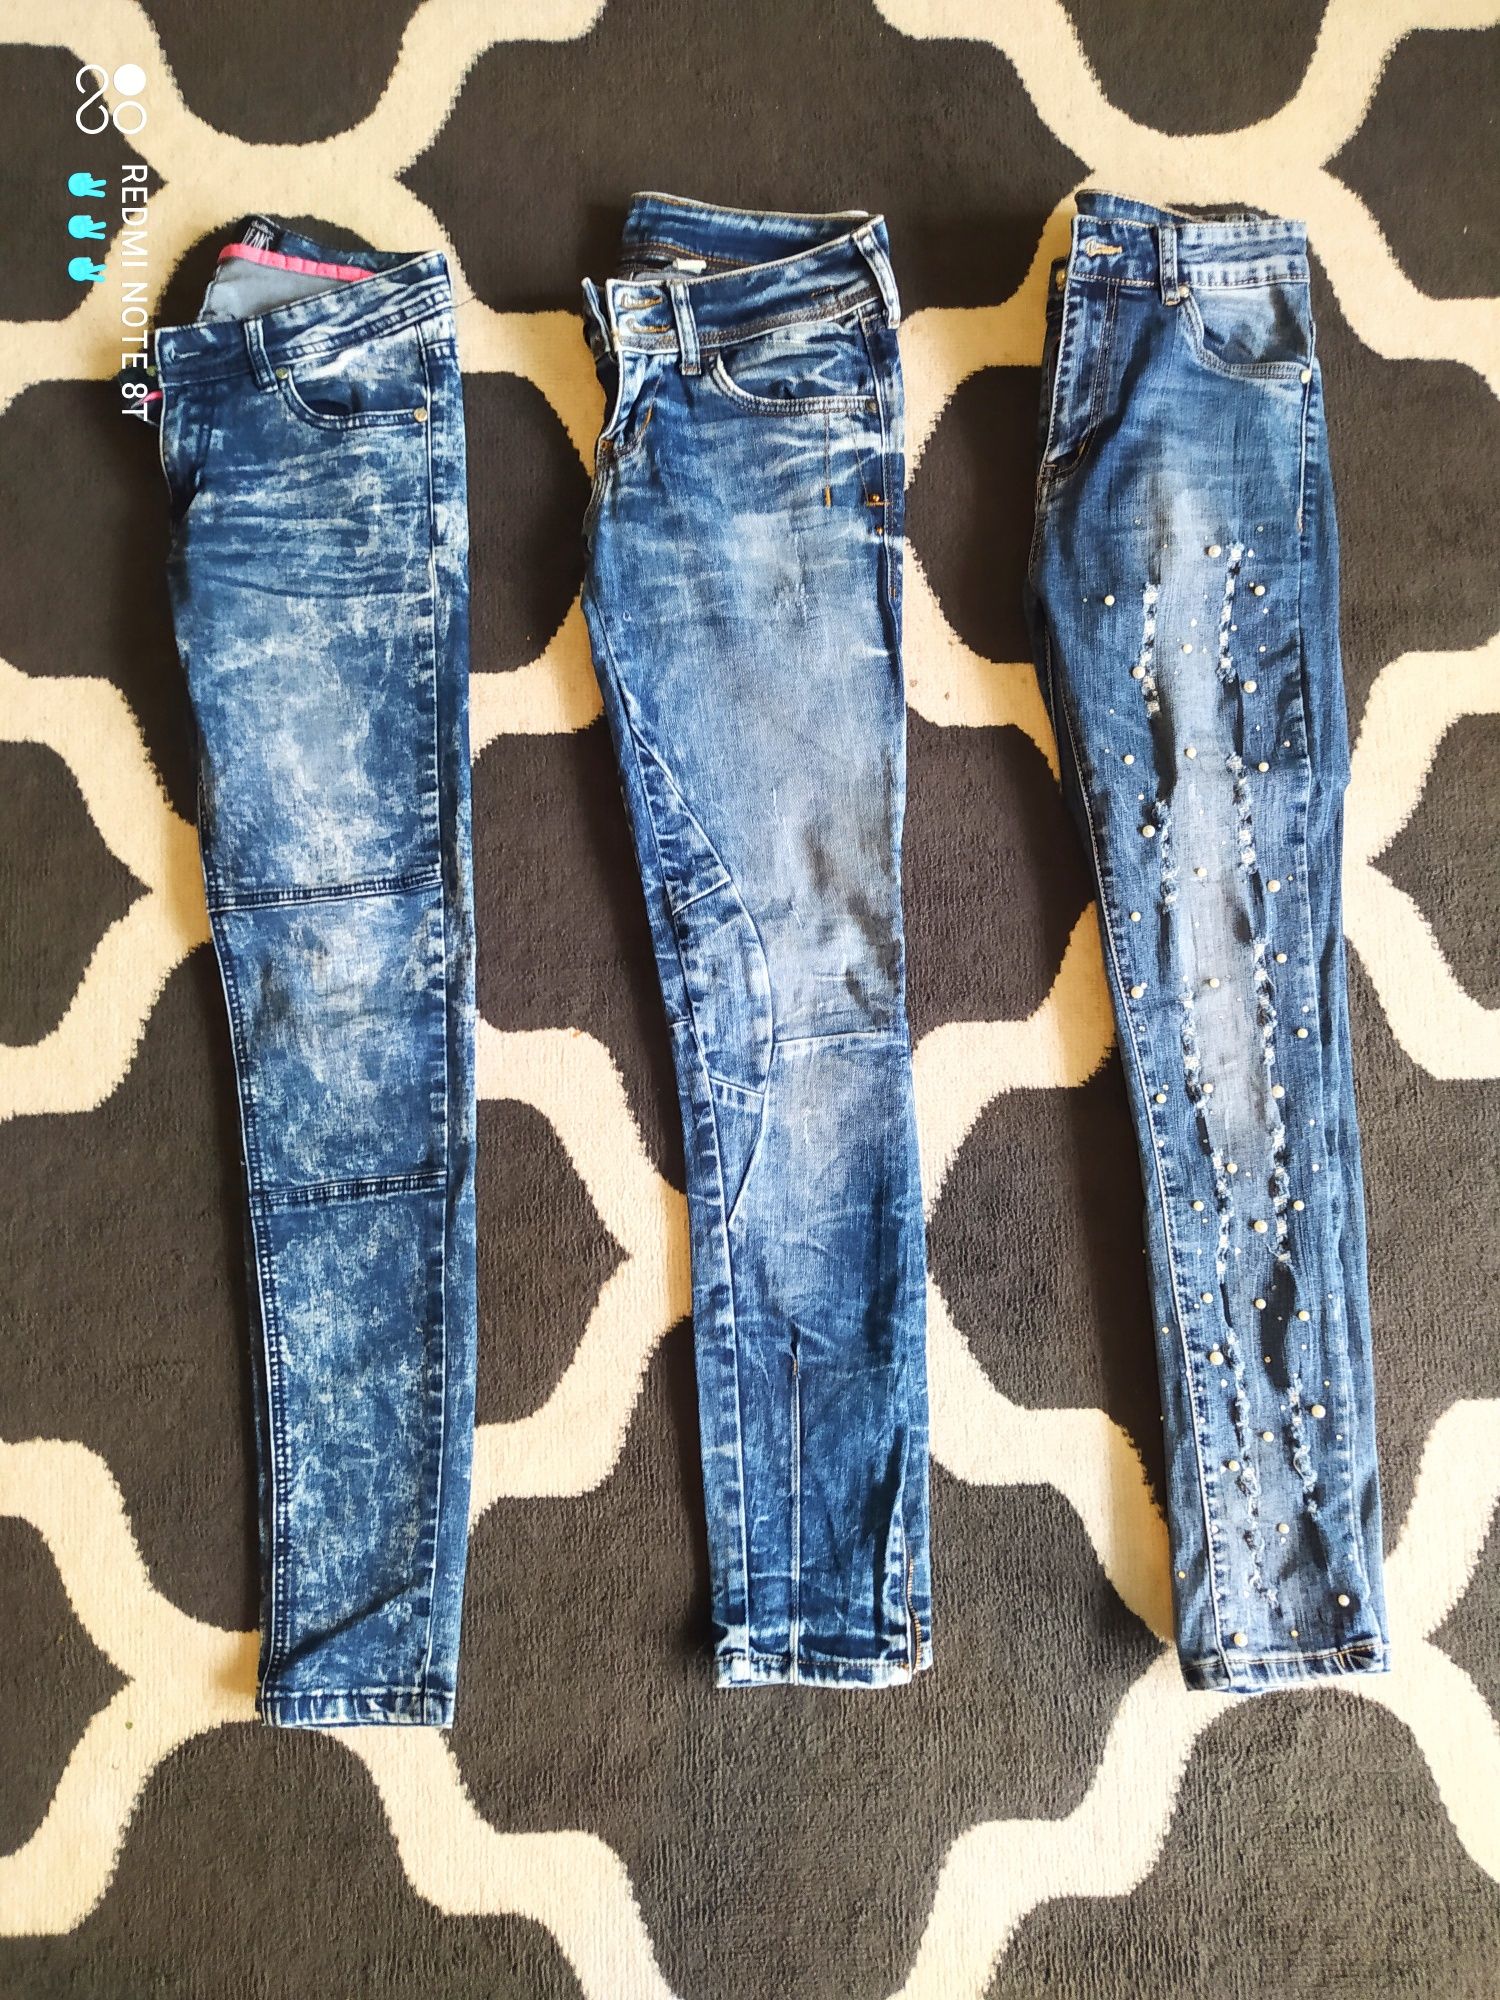 Spodnie damskie jeansy r S  -   3 par damskie jeansy r S  -   3 pary